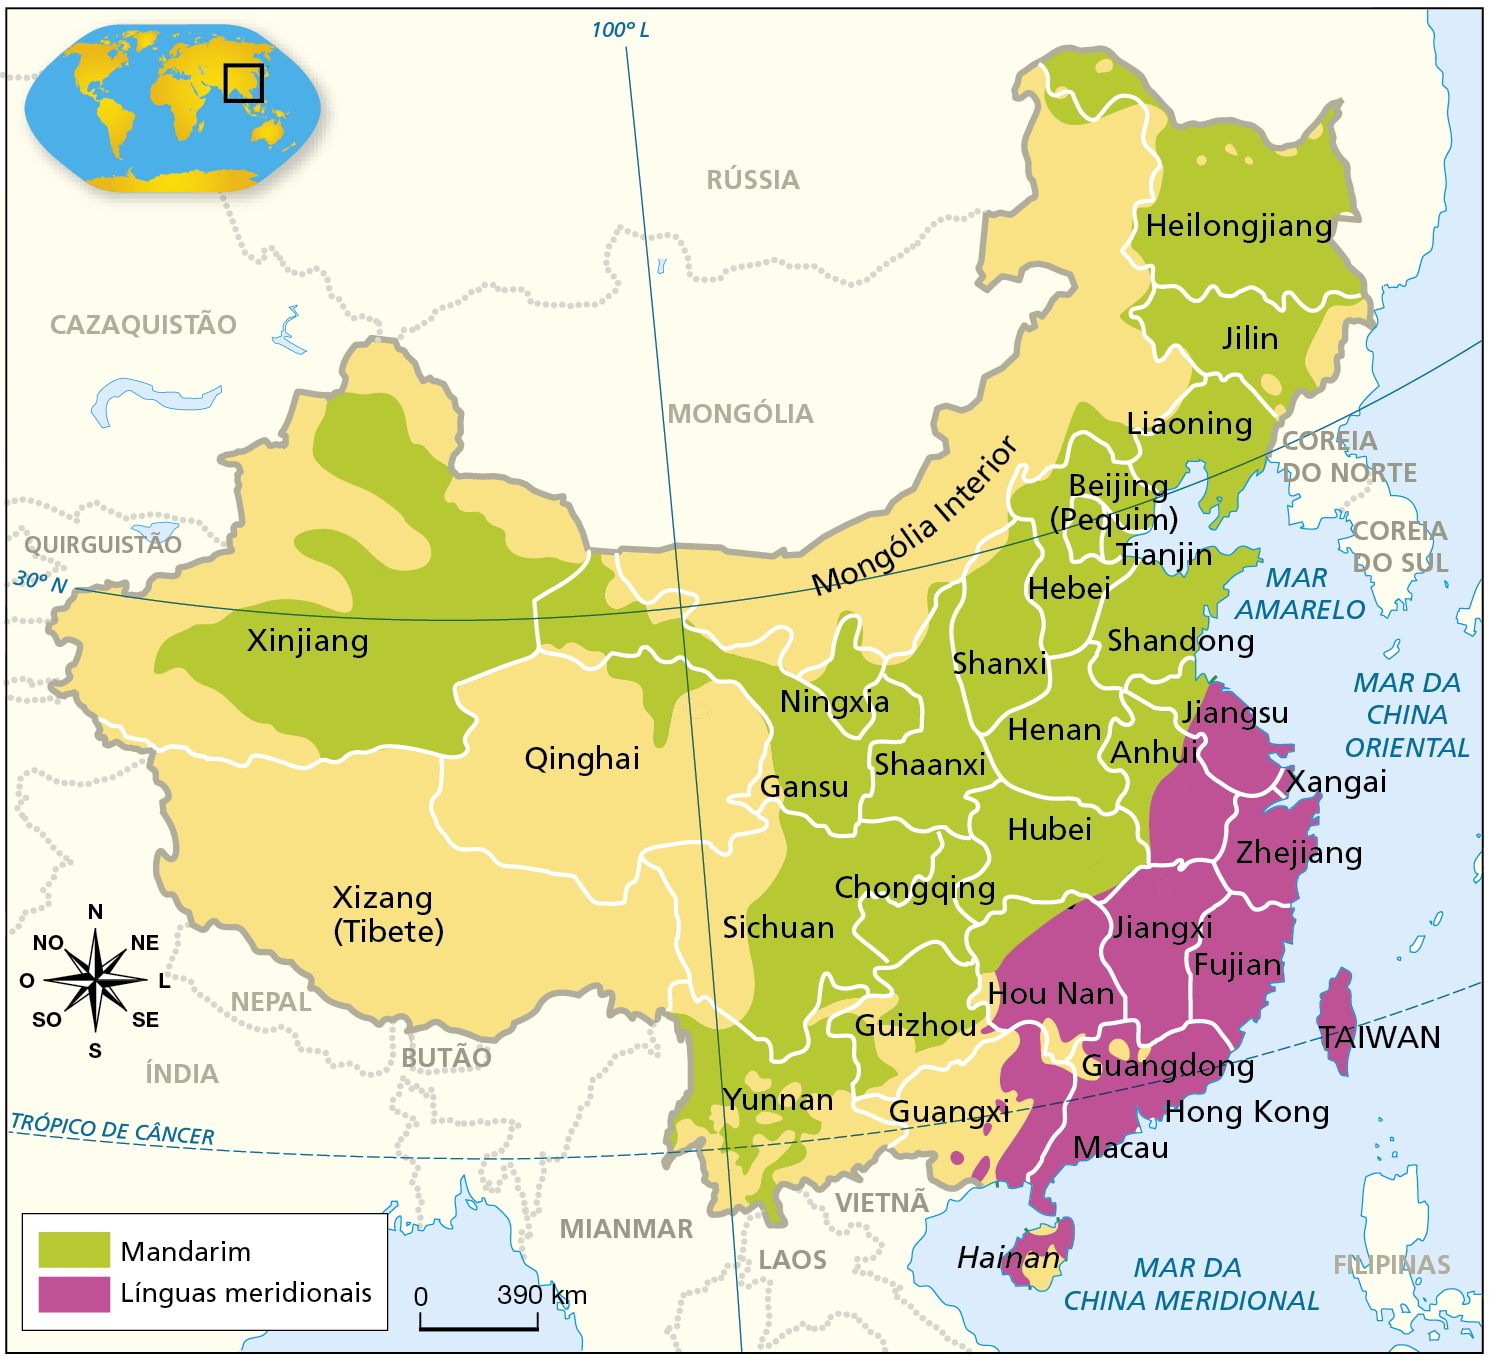 Mapa. China: línguas. Mapa mostrando a distribuição das línguas predominantes no território chinês. Mandarim: predominante na porção noroeste, nordeste, centro e sul, com destaque para as províncias de Heilongjiang, Jilin, Liaoning, Beijing (Pequim), Tianjin, Hebei, Shanxi, Shandong, Shanxi, Xinjiang, Gansu, Ningxia, Henan, Anhui, Hubei, Chongqing, Sichuan, Guizhou, Yunnan. Línguas meridionais: predominantes na porção sudeste, com destaque para as províncias de Jiangsu, Xangai, Zhejiang, Jiangxi, Fujian, Hou Nan, Guangdong, Hong Kong, Macau, Hainan. À esquerda, rosa dos ventos. Na parte inferior, escala de 0 a 390 quilômetros.